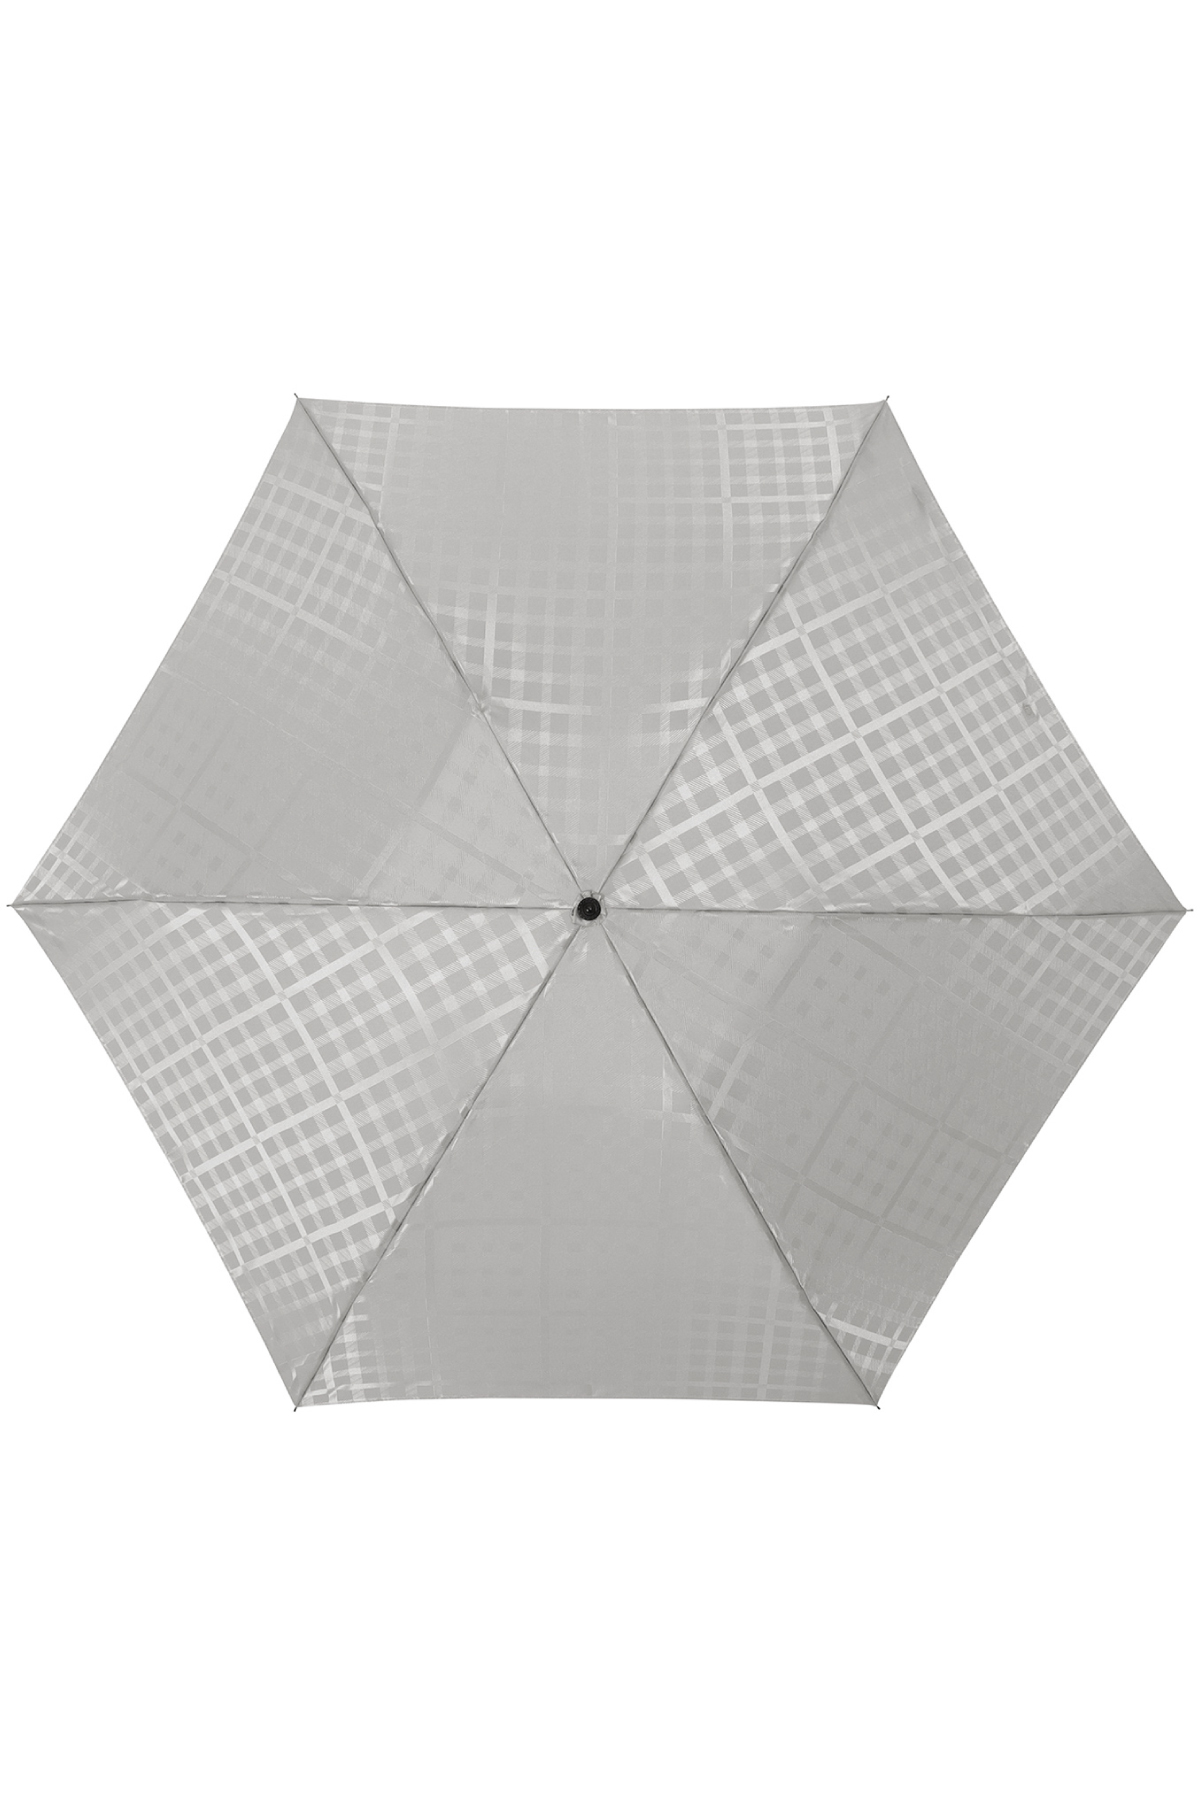 【雨傘】ミニ折りたたみ傘ジャカード